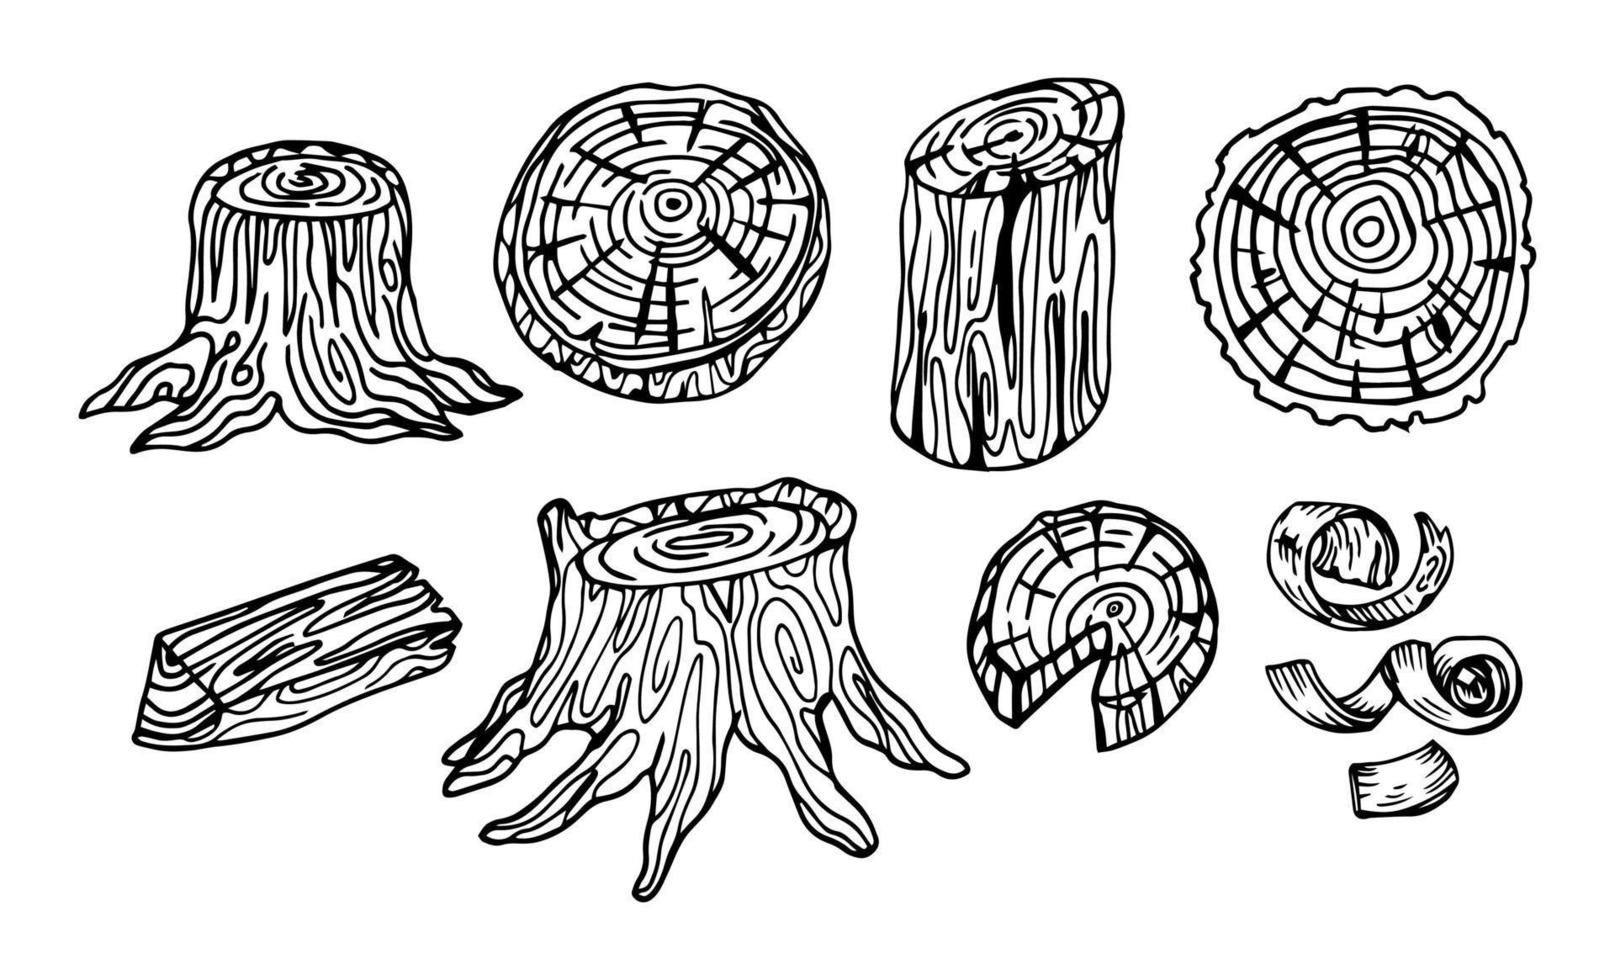 madeira desenhada à mão. esboçar toras de madeira, tronco e pranchas. galhos de árvores empilhados, conjunto vintage de material de construção florestal vetor